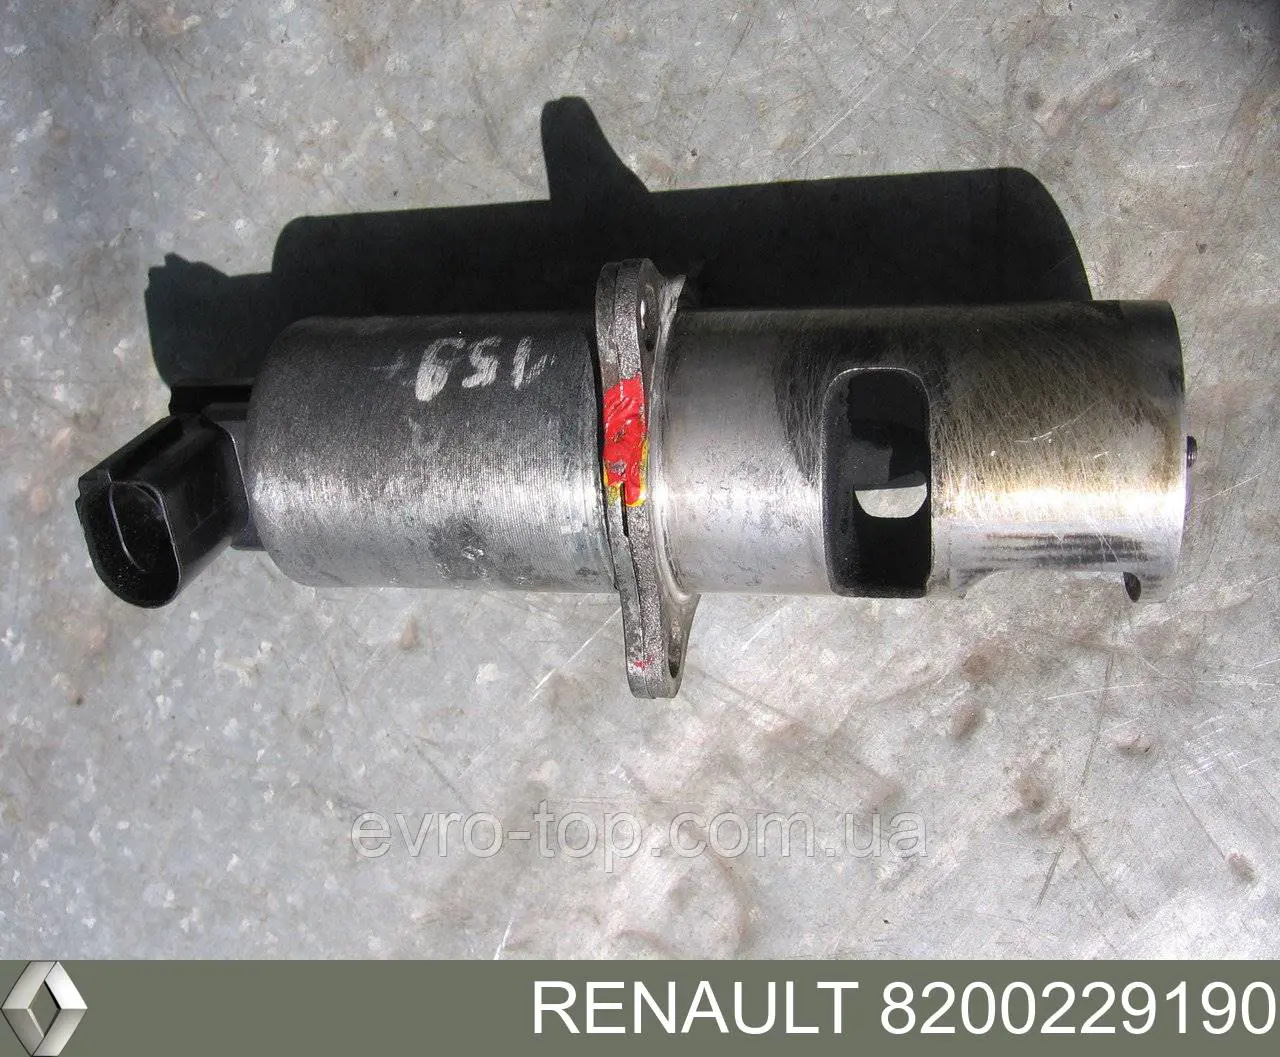 8200229190 Renault (RVI) válvula egr de recirculação dos gases